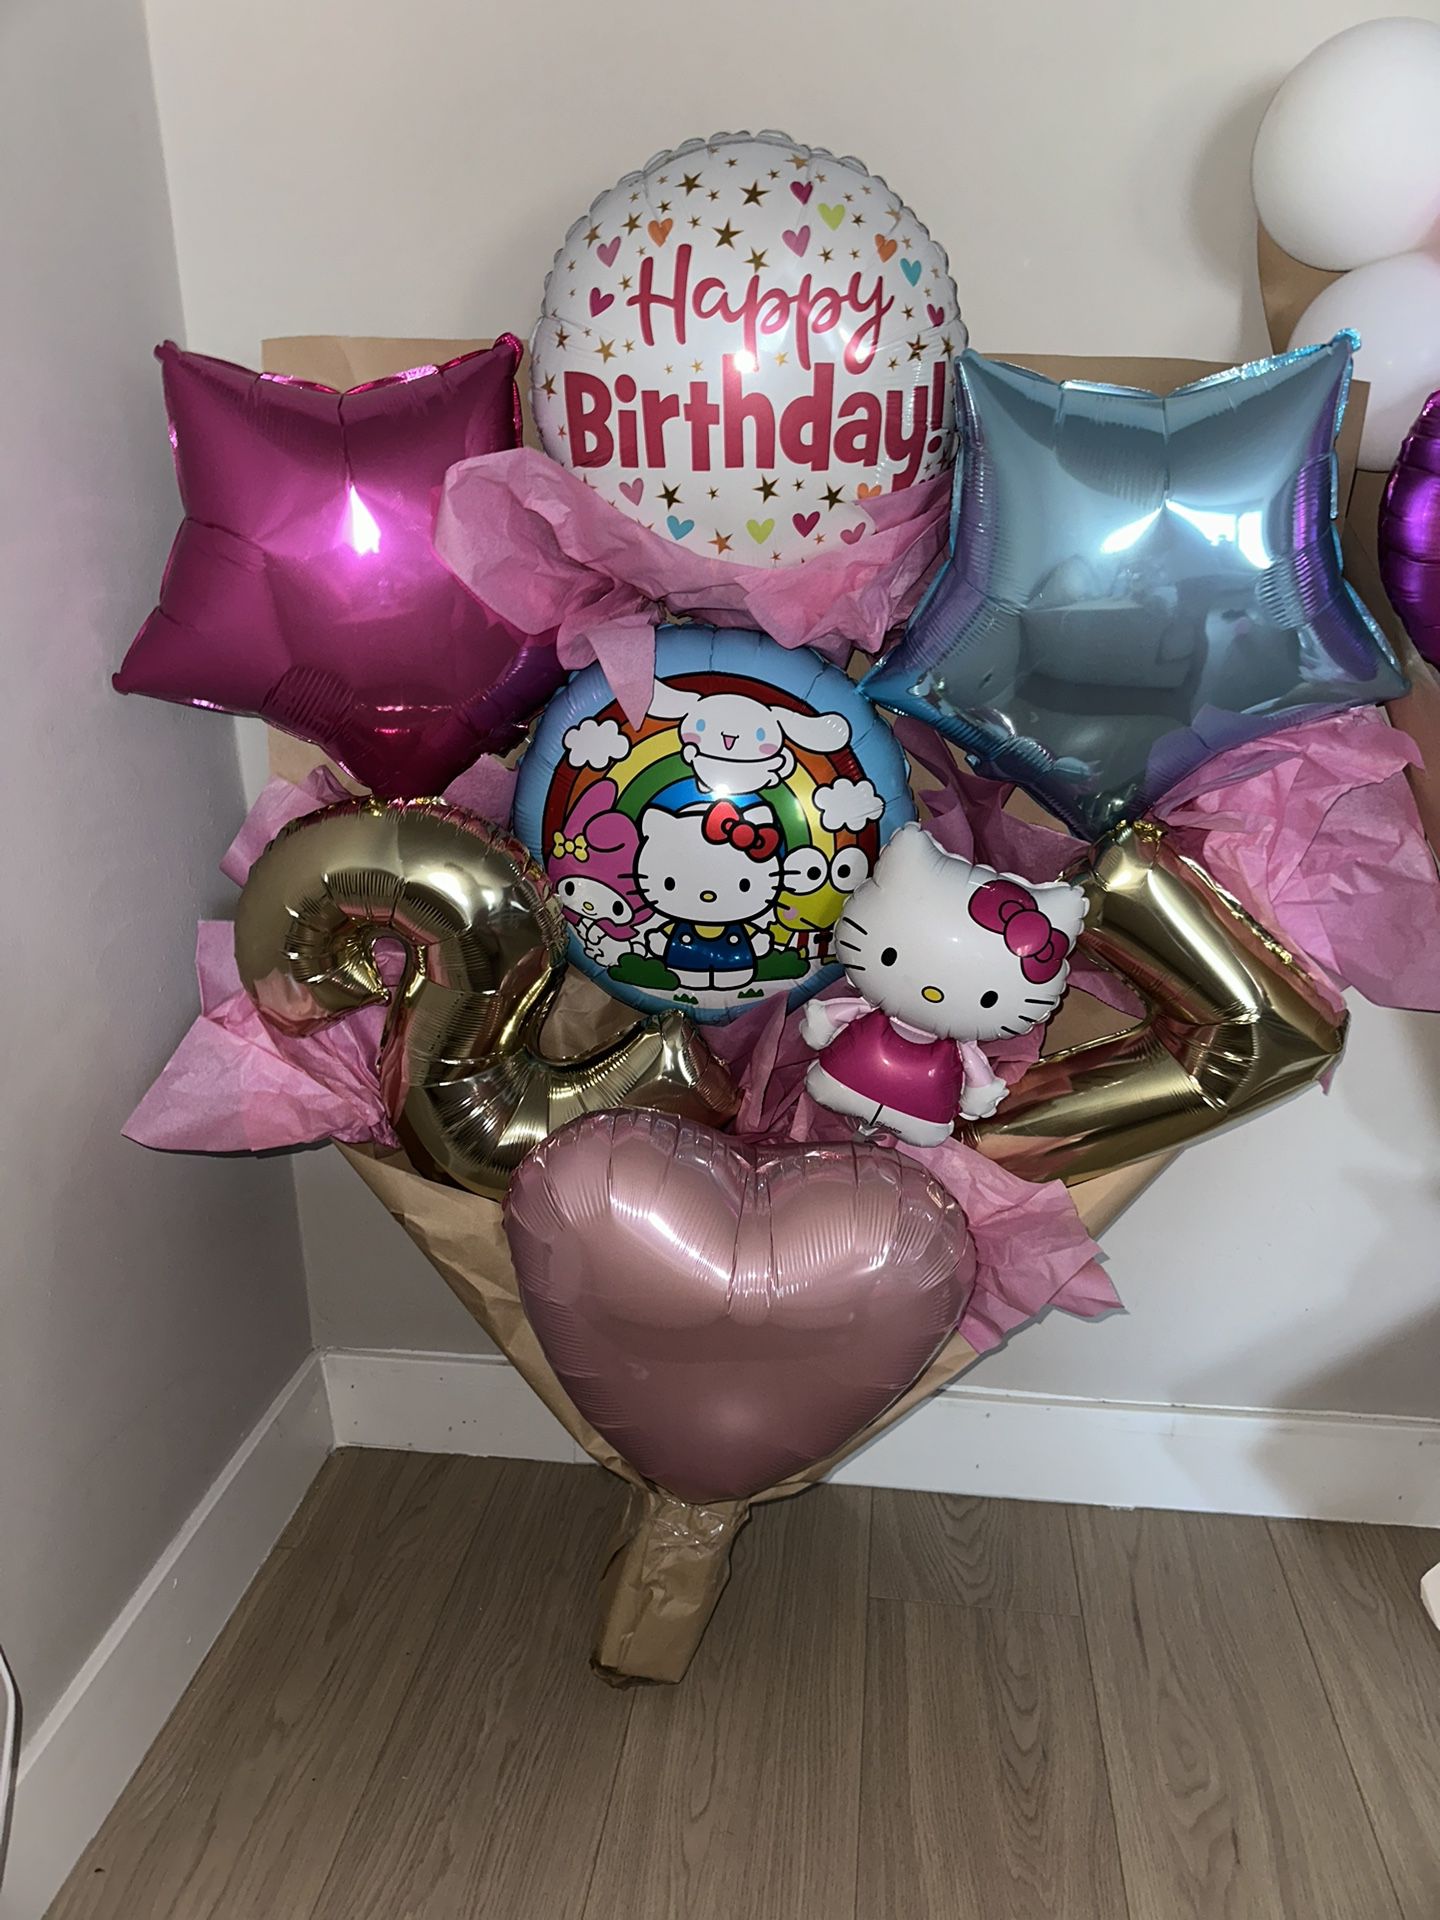 Hello Kitty Balloon Bouquet